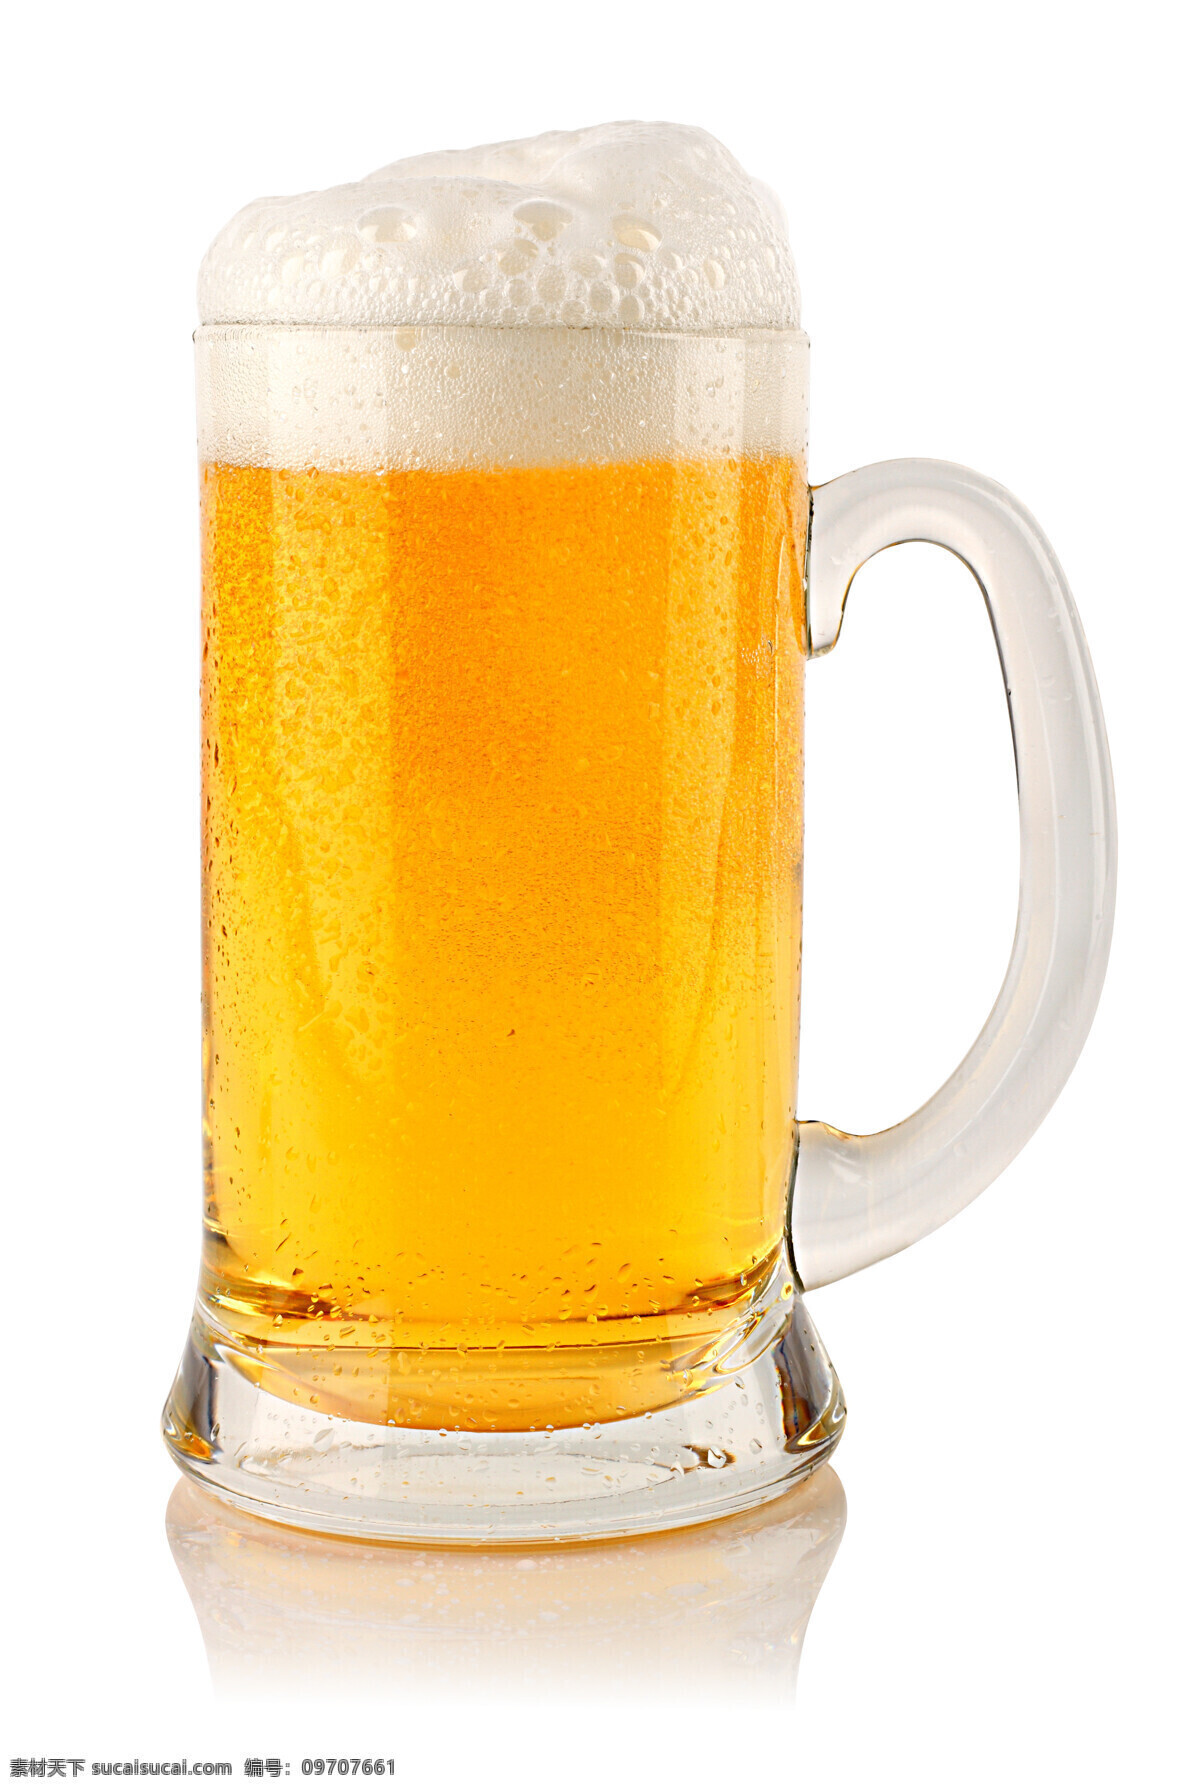 啤酒 杯子 啤酒杯子 玻璃杯子 酒水饮料 酒类图片 餐饮美食